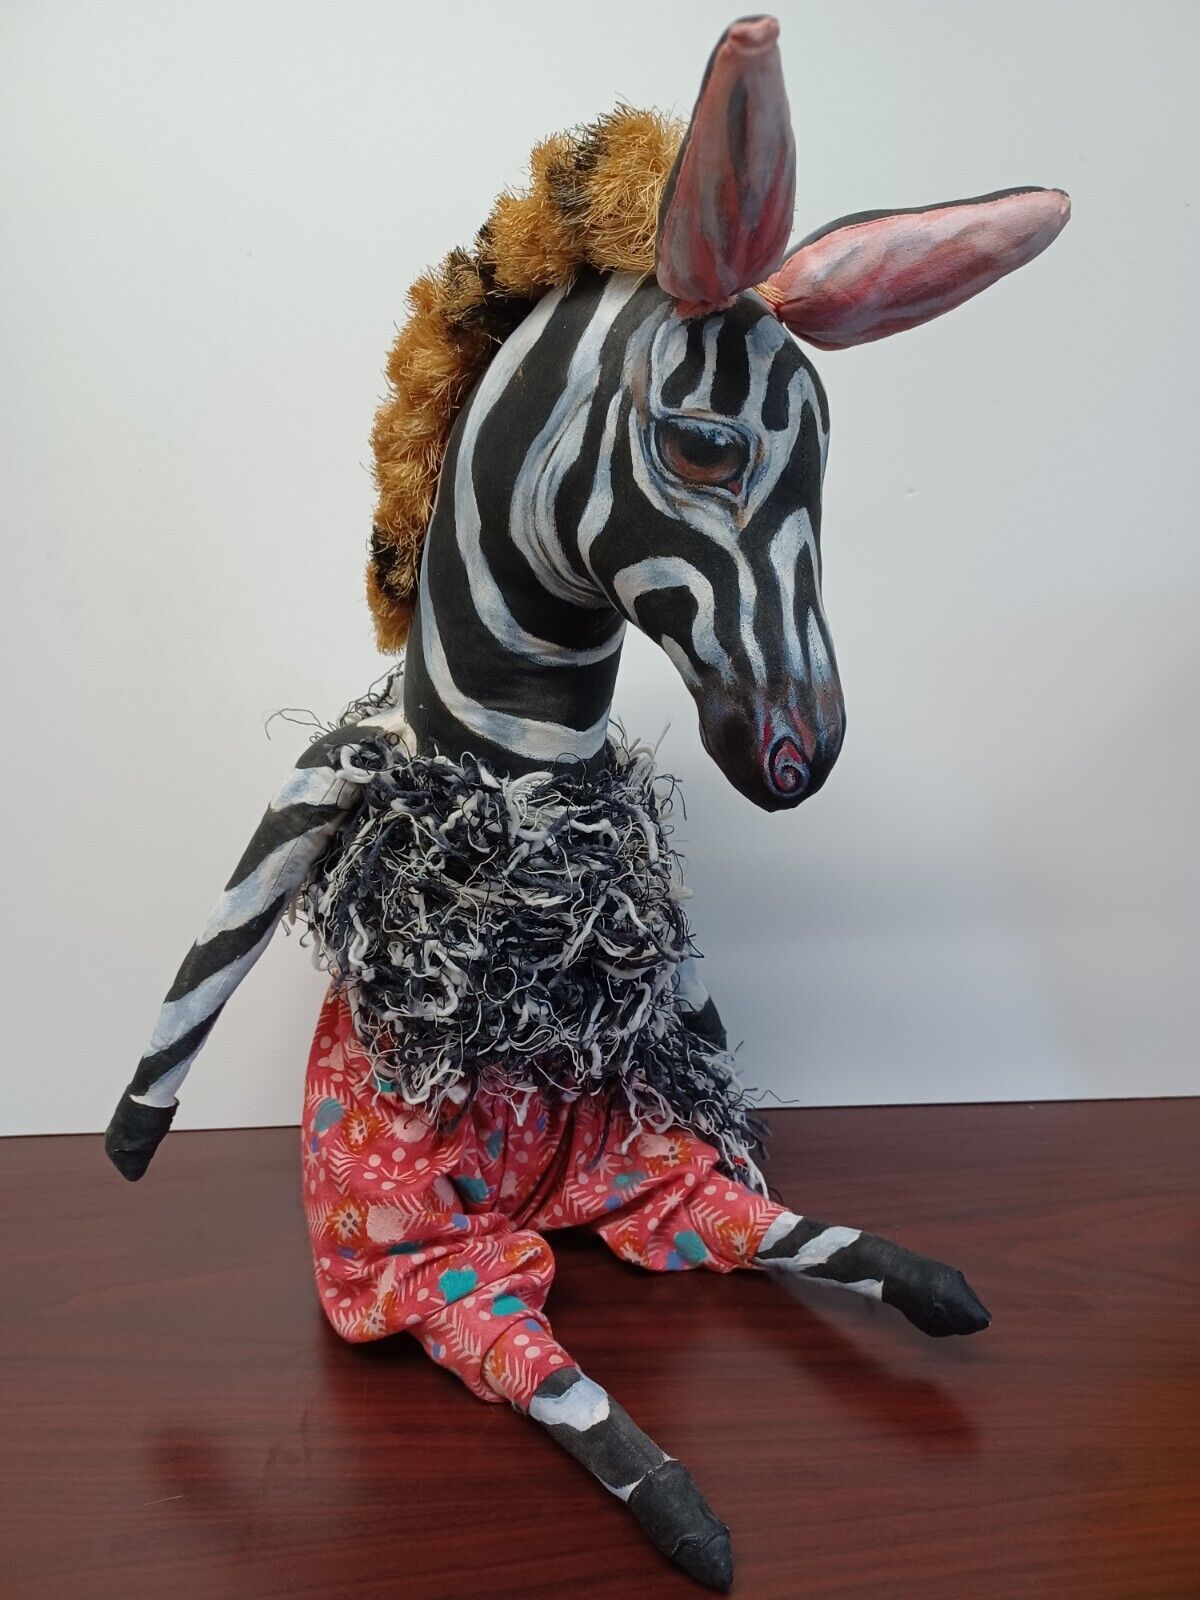 OOAK Zebra sculpture Hand Painted folk art stuffed canvas Signed 1992 J. Batsdin